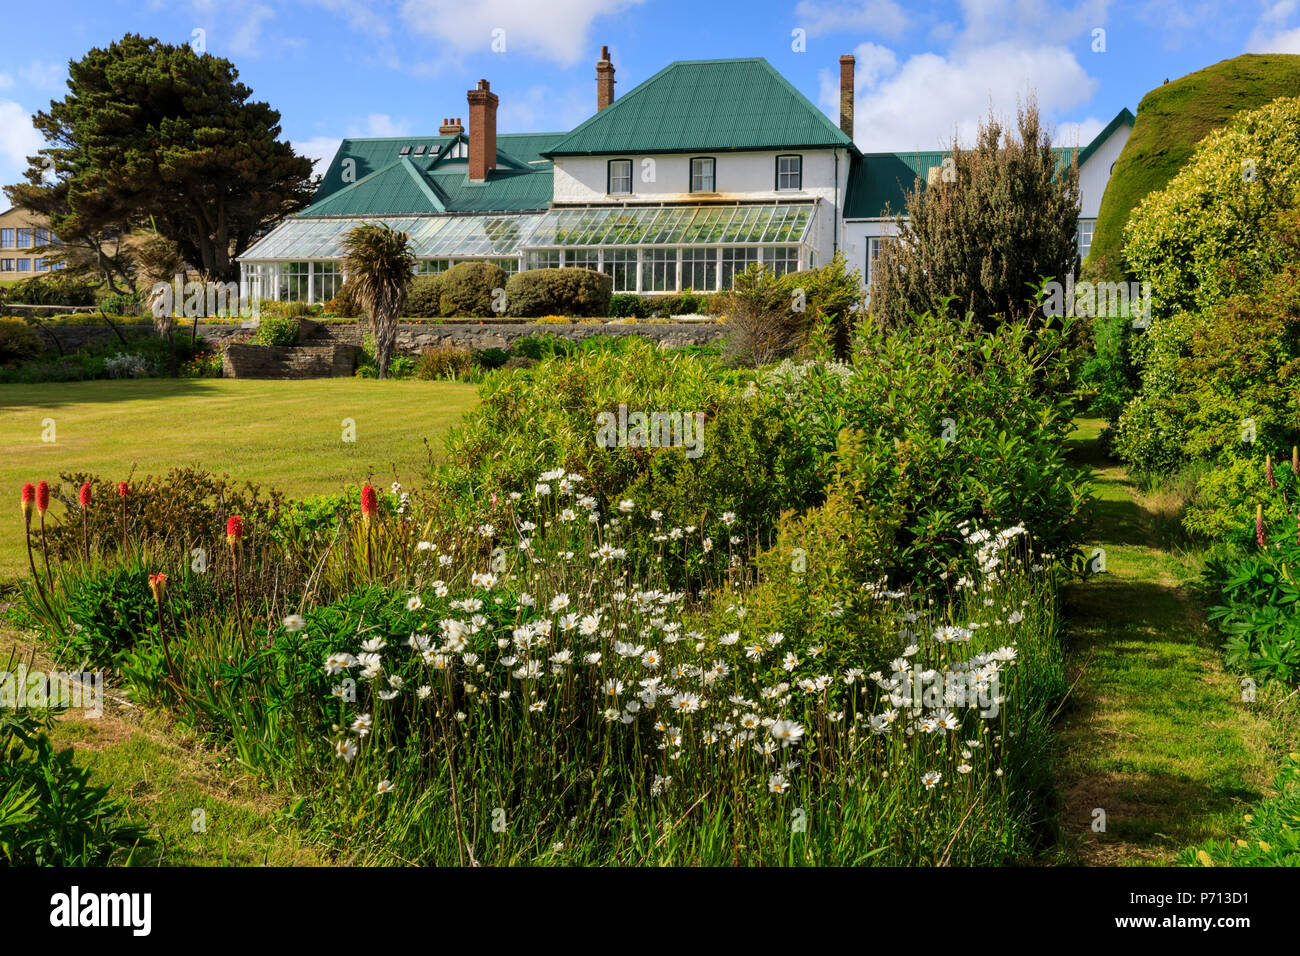 Das Government House, 1845, Wintergarten, grünen Dach, wunderschöne Anlage, blauer Himmel, Stanley, Port Stanley, Falkland Inseln, Südamerika Stockfoto